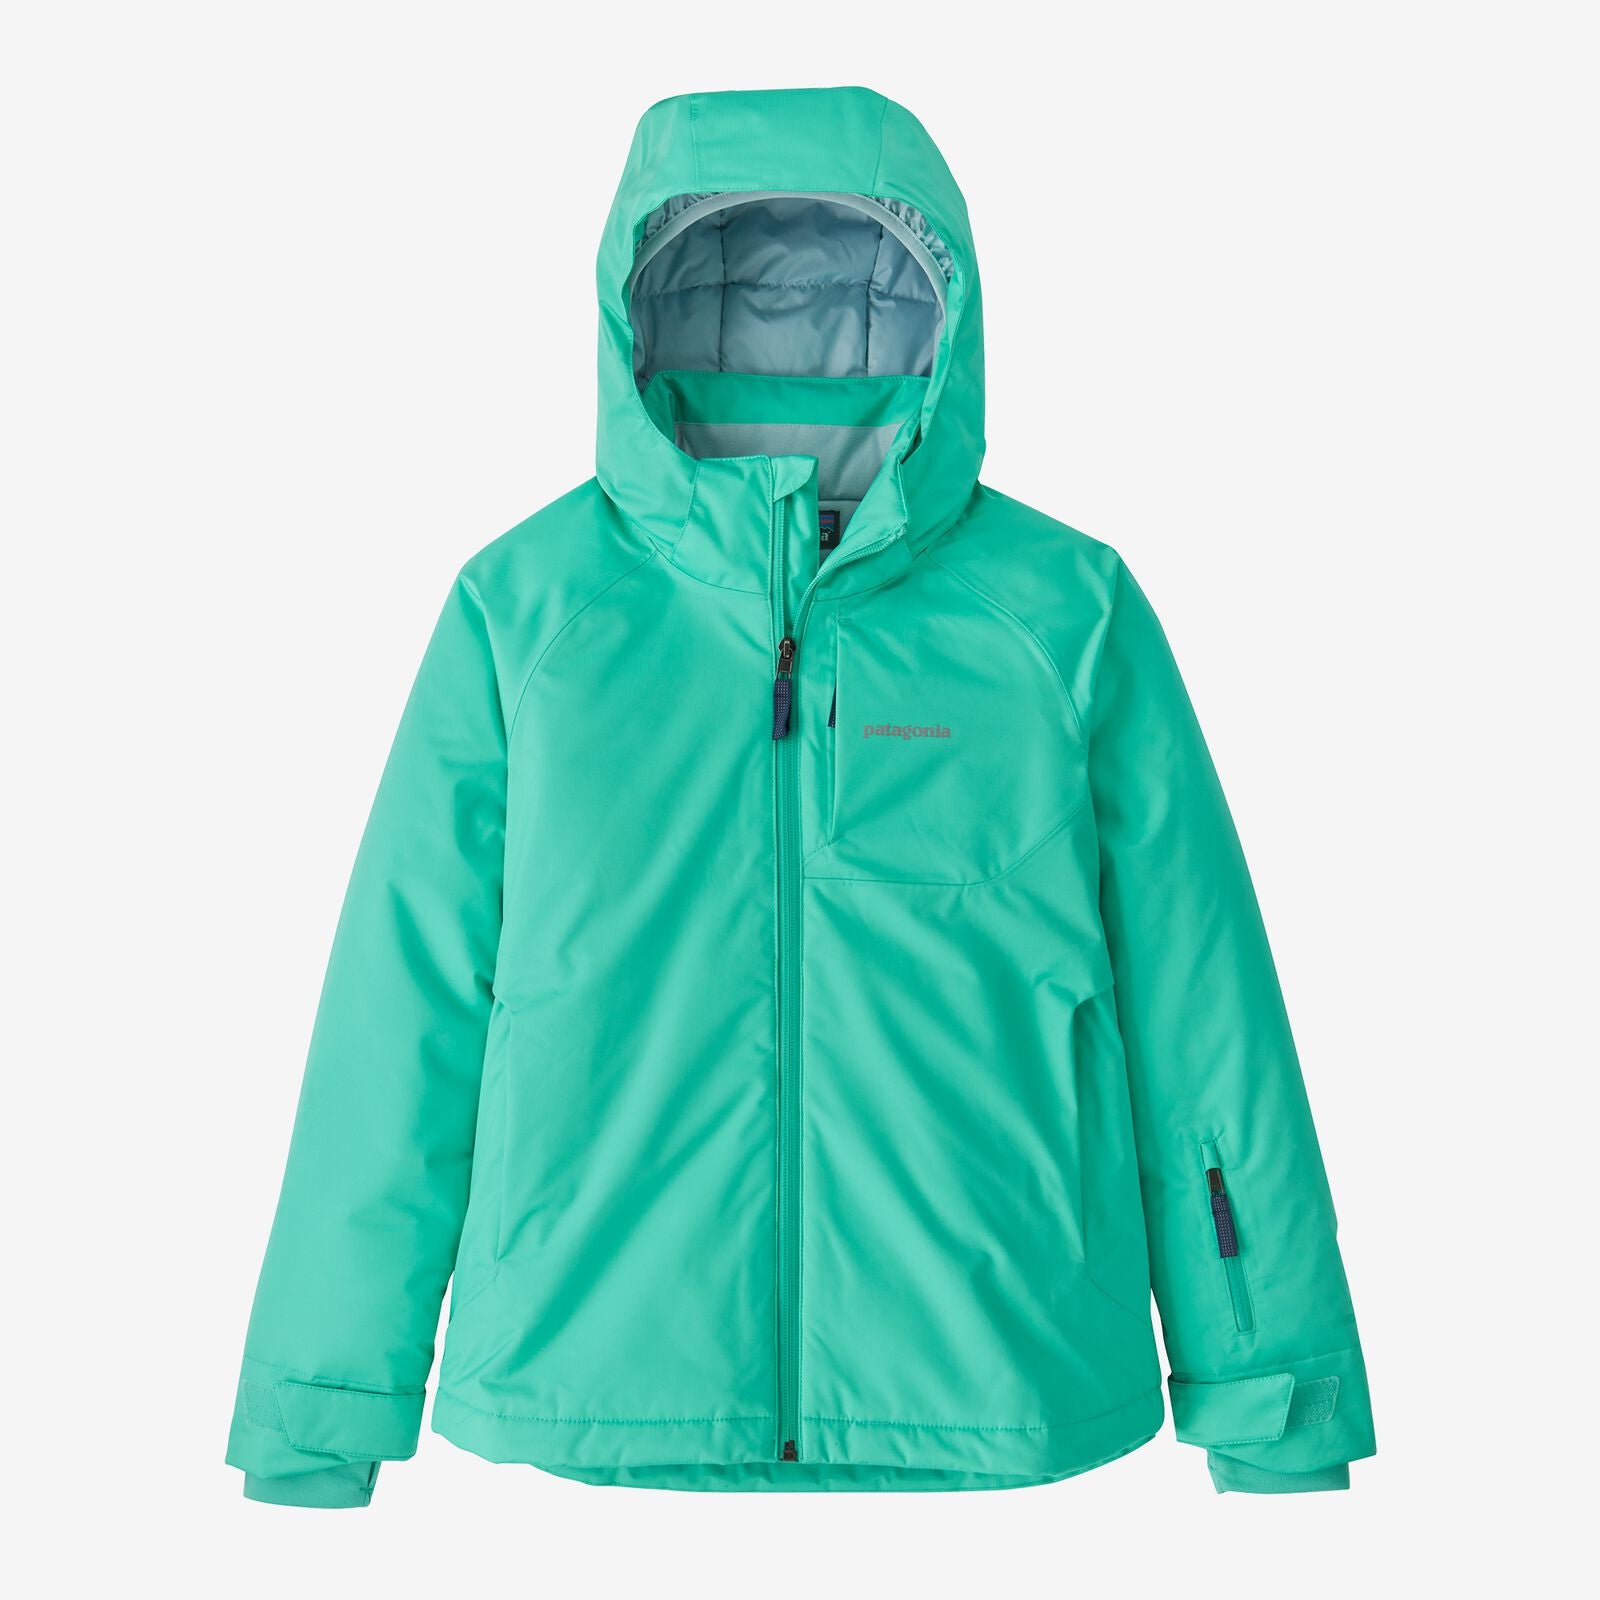 Patagonia Girls' Snowbelle Jacket